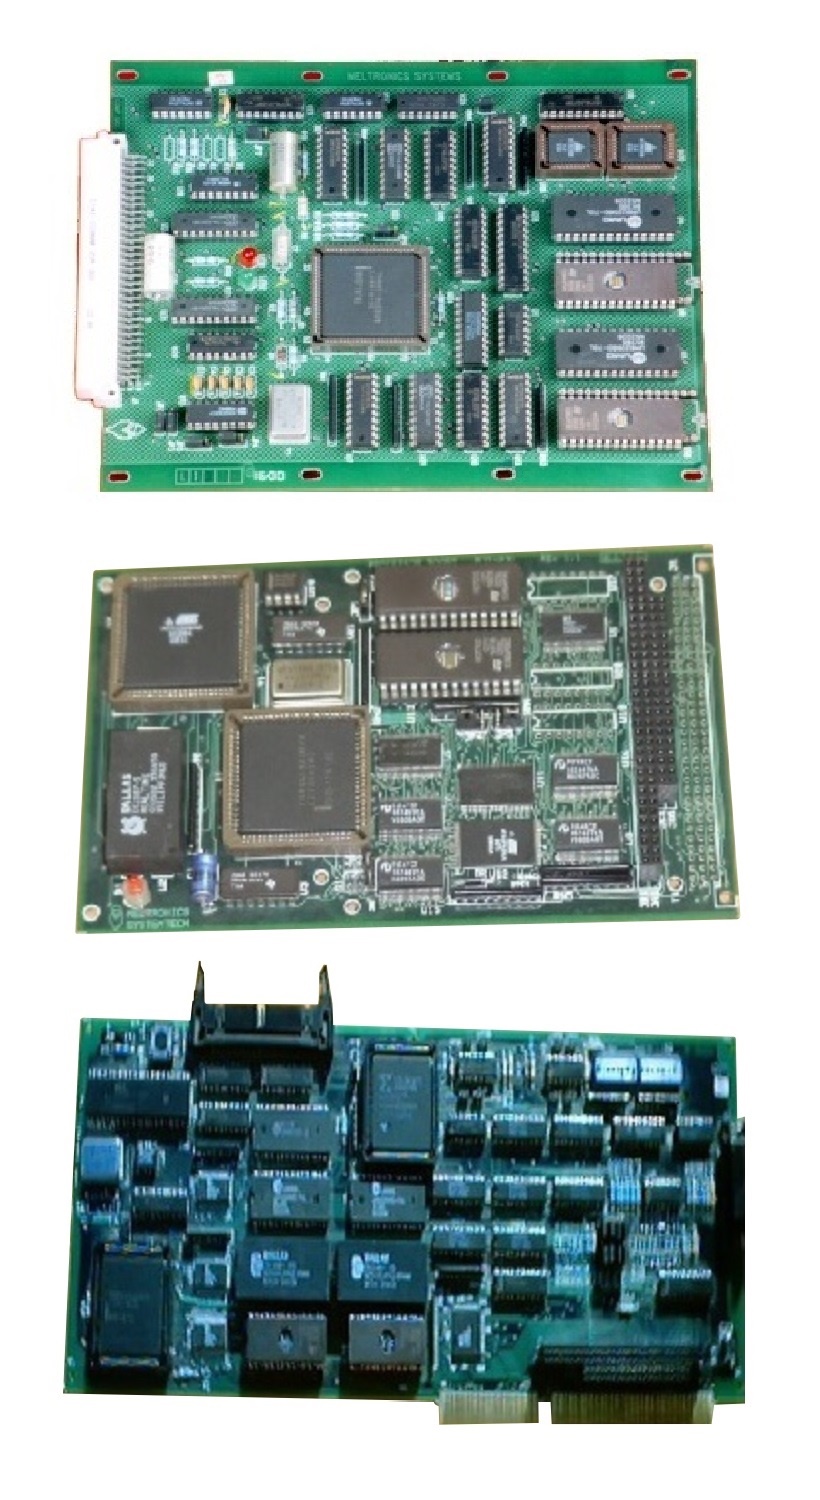 Intel 186 EB & EC Processor Boards